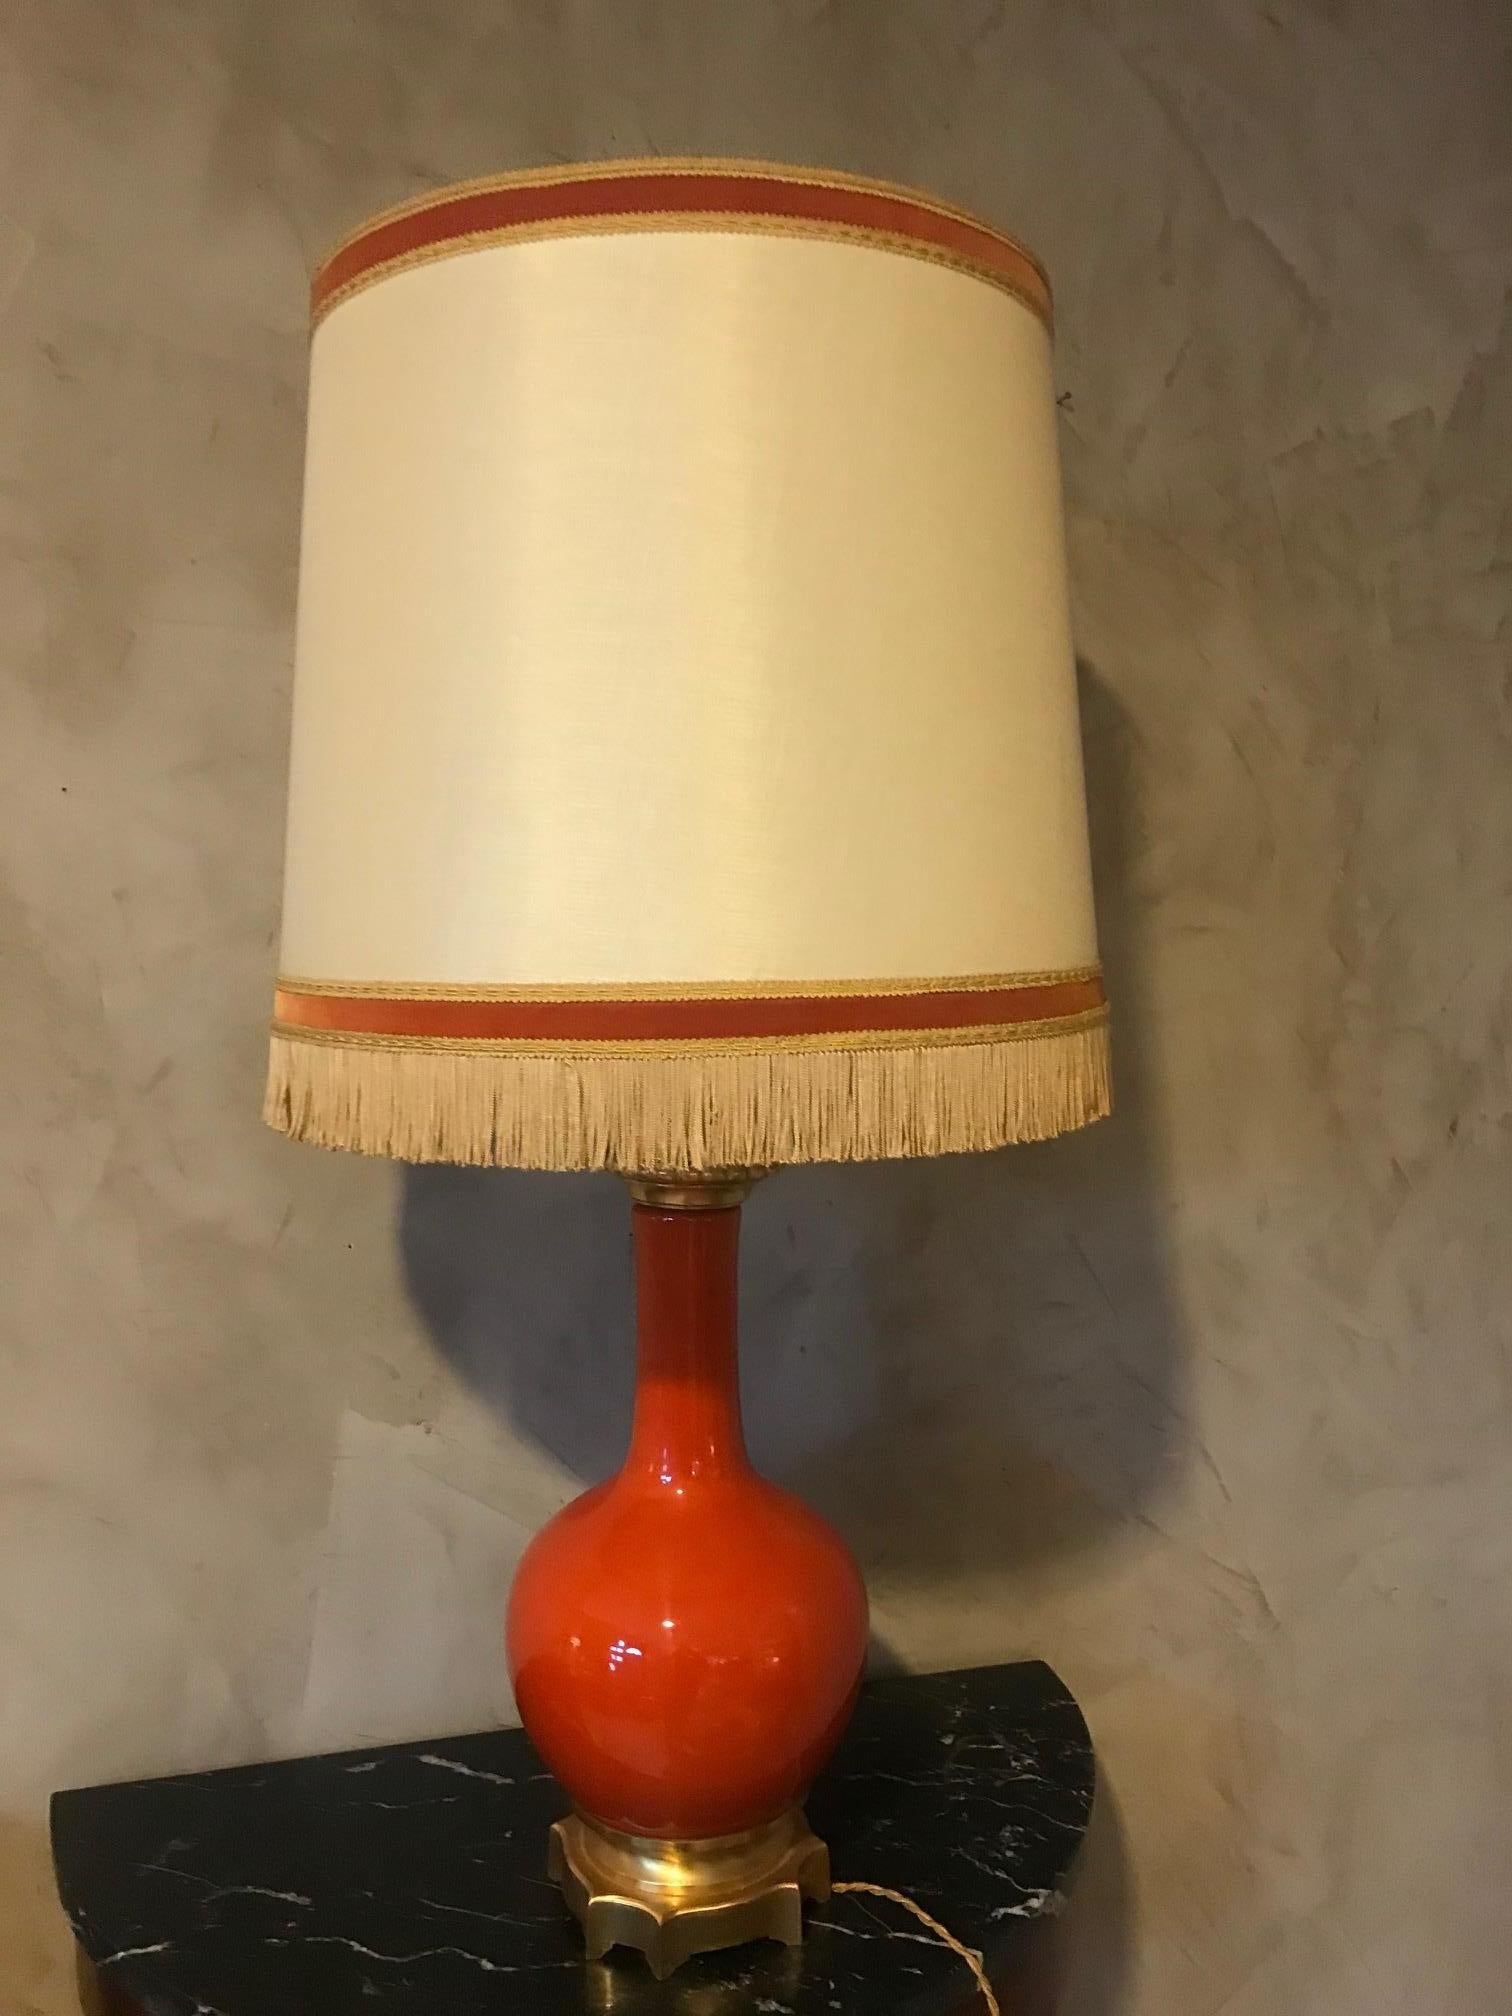 Schöne französische Tischlampe aus orangefarbenem Opalglas und Messing aus den 1920er-Jahren. 
Schöner Lampenschirm mit Fransen. Vergoldeter Messingfuß. 
Gute Qualität und guter Zustand.